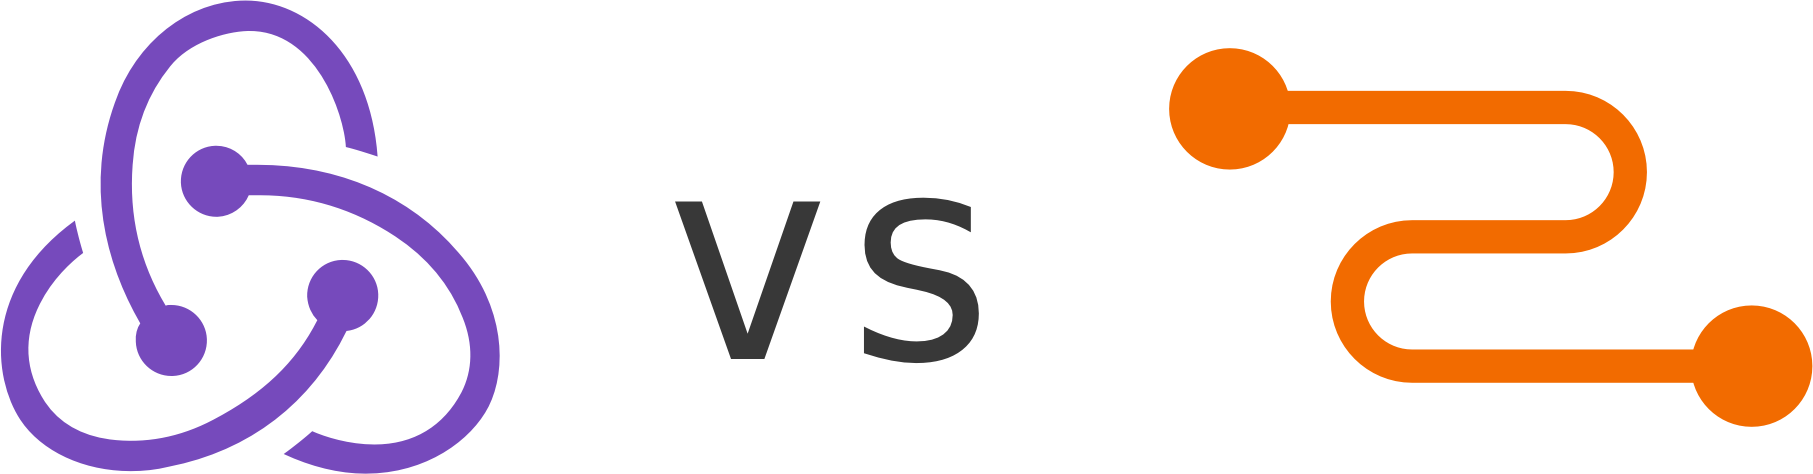 Redux vs. Js логотип. Js логотип на прозрачном фоне. Лого Network Redux. Js логотип на белом фоне.